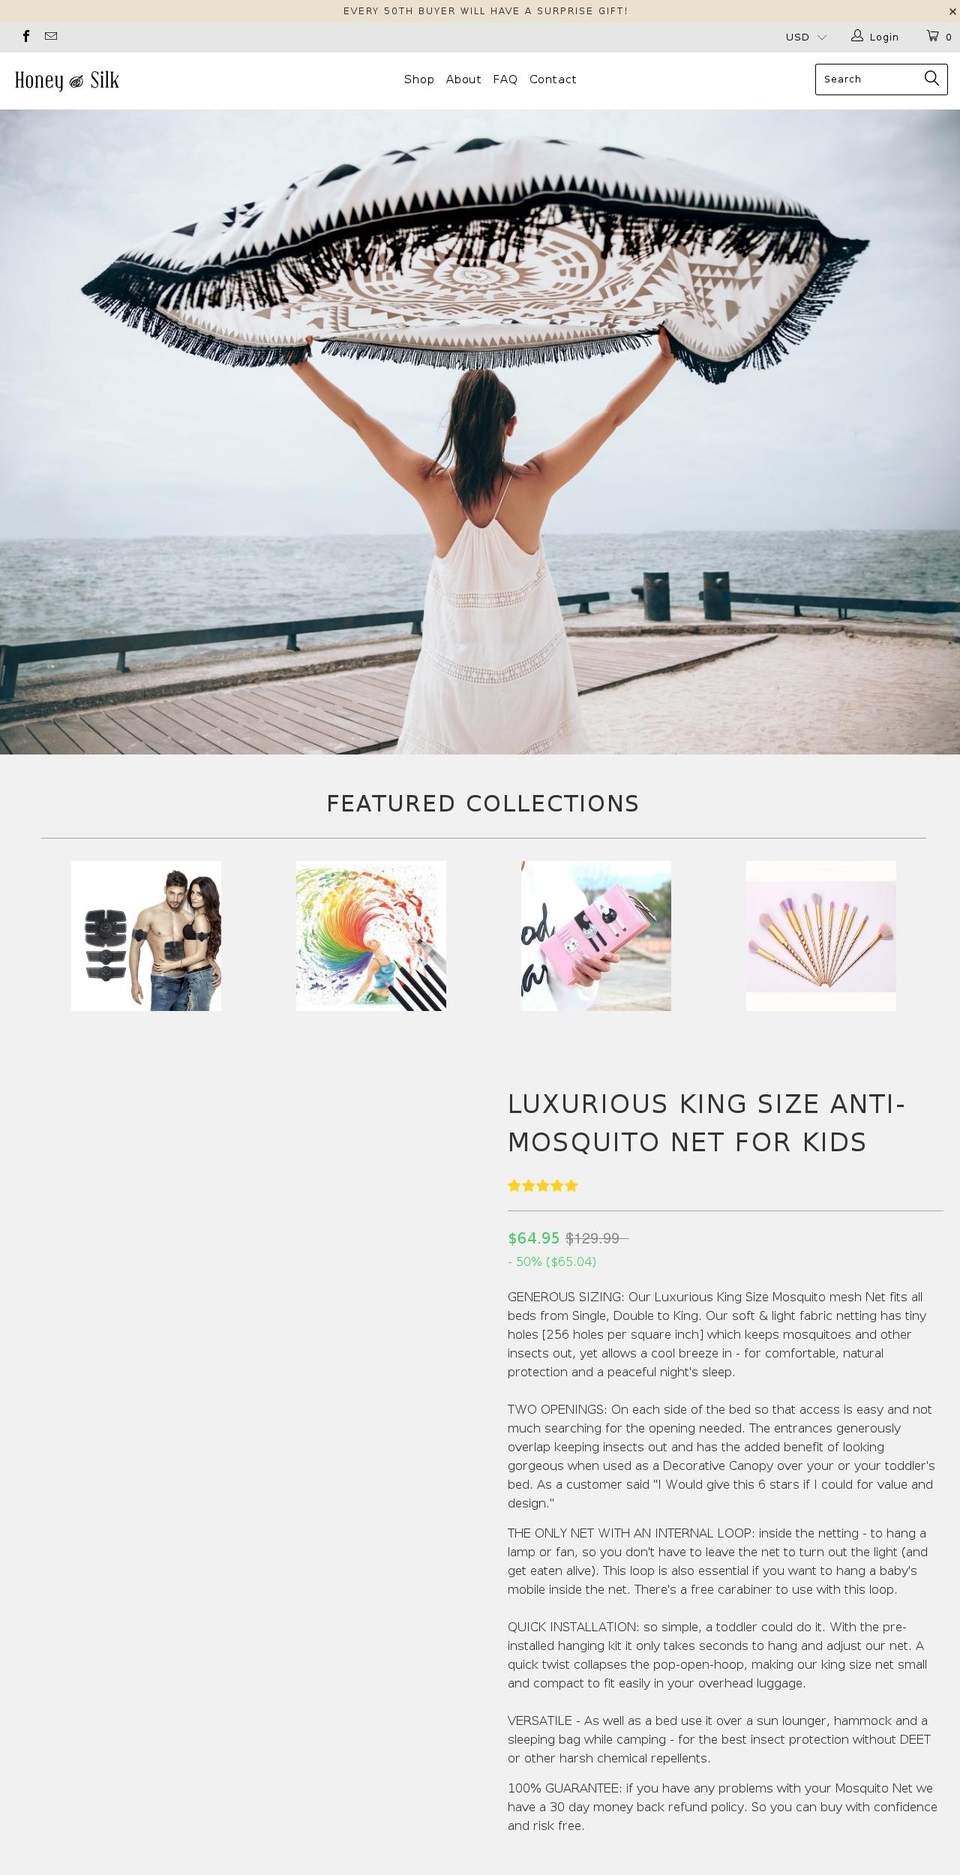 honey-and-silk.com shopify website screenshot